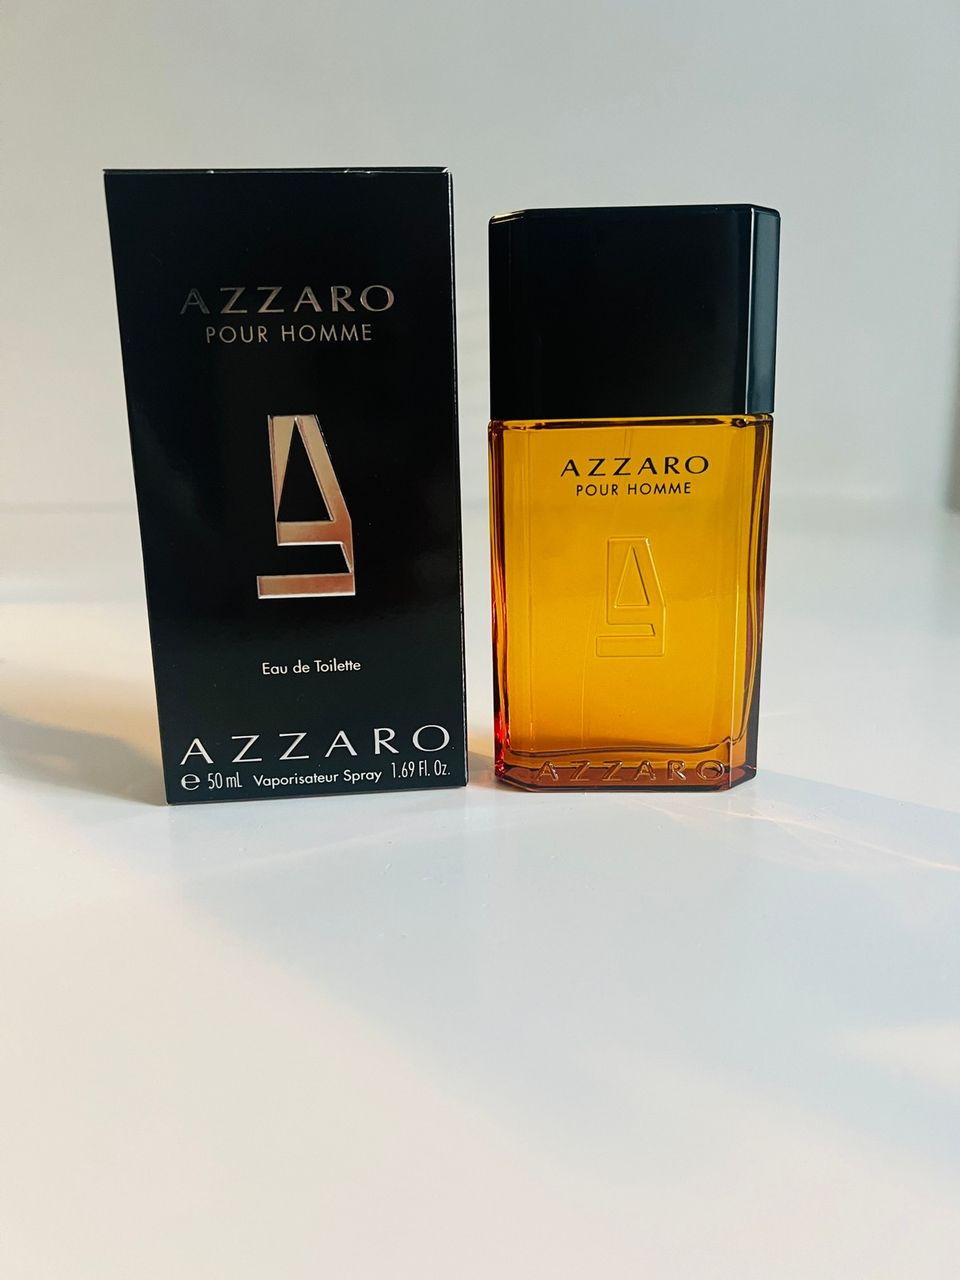 Azzaro - Pour Homme hajuvesi